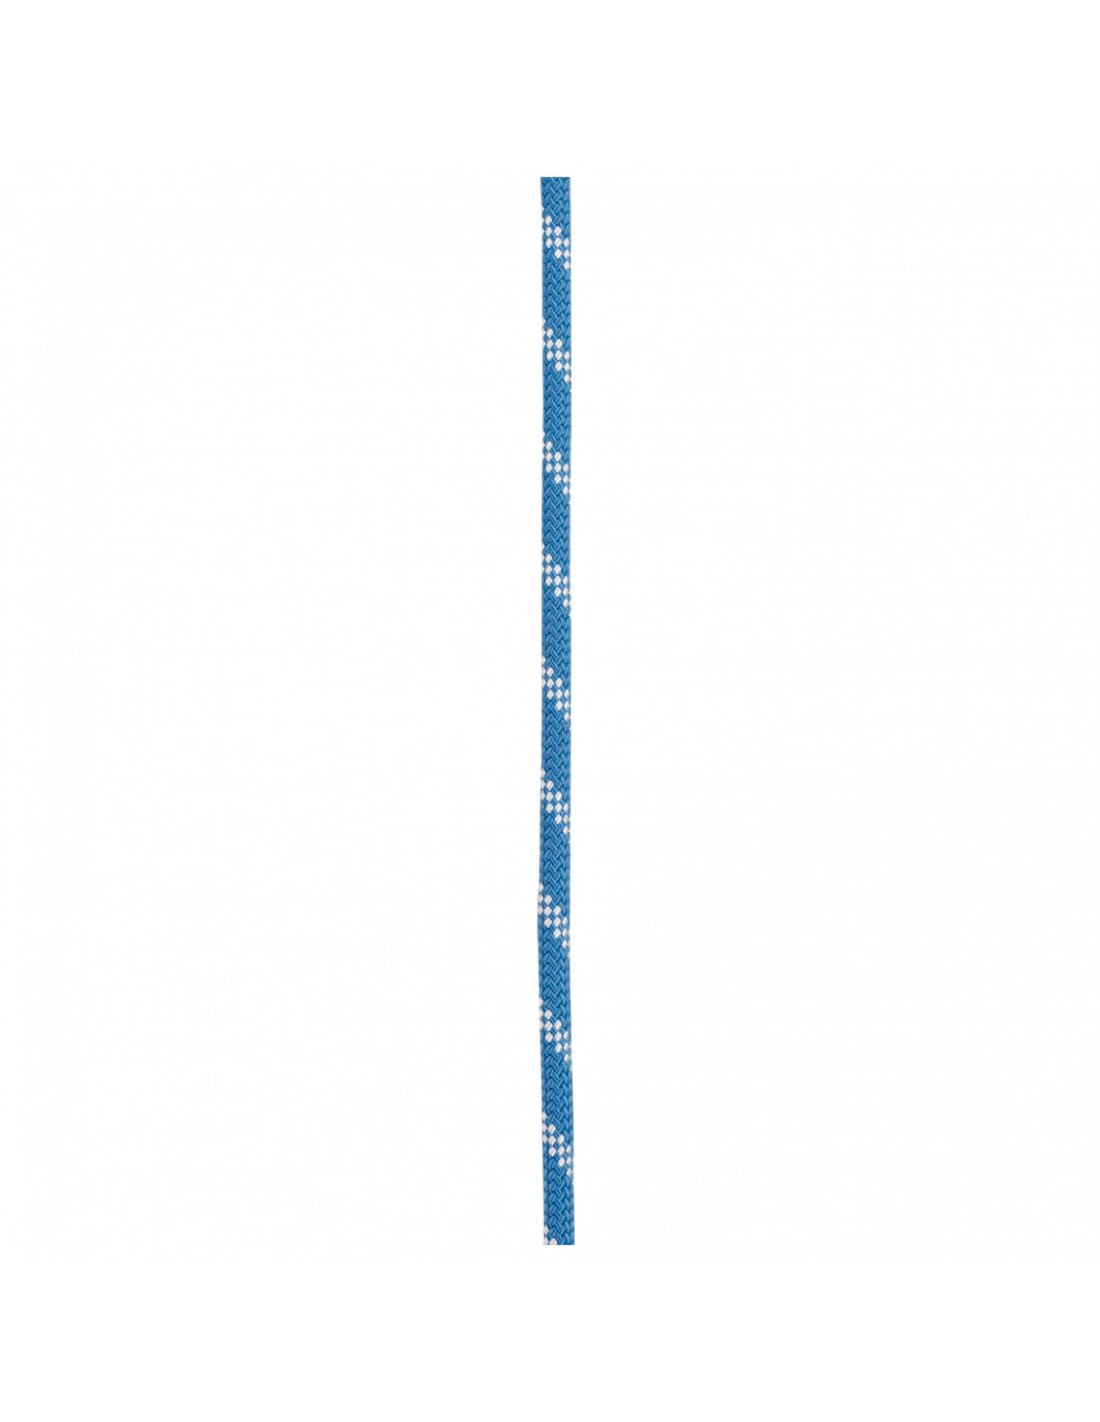 Edelrid Kletterseil Prostatic Synctec 10,5 mm, blue, 200 Meter Seildurchmesser - 10.1 - 10.5 mm, Seilvariante - Statikseil, Seilfarbe - Blau, Seilgewicht - 76 - 80 g / m, Seillänge - 200 m, von Edelrid